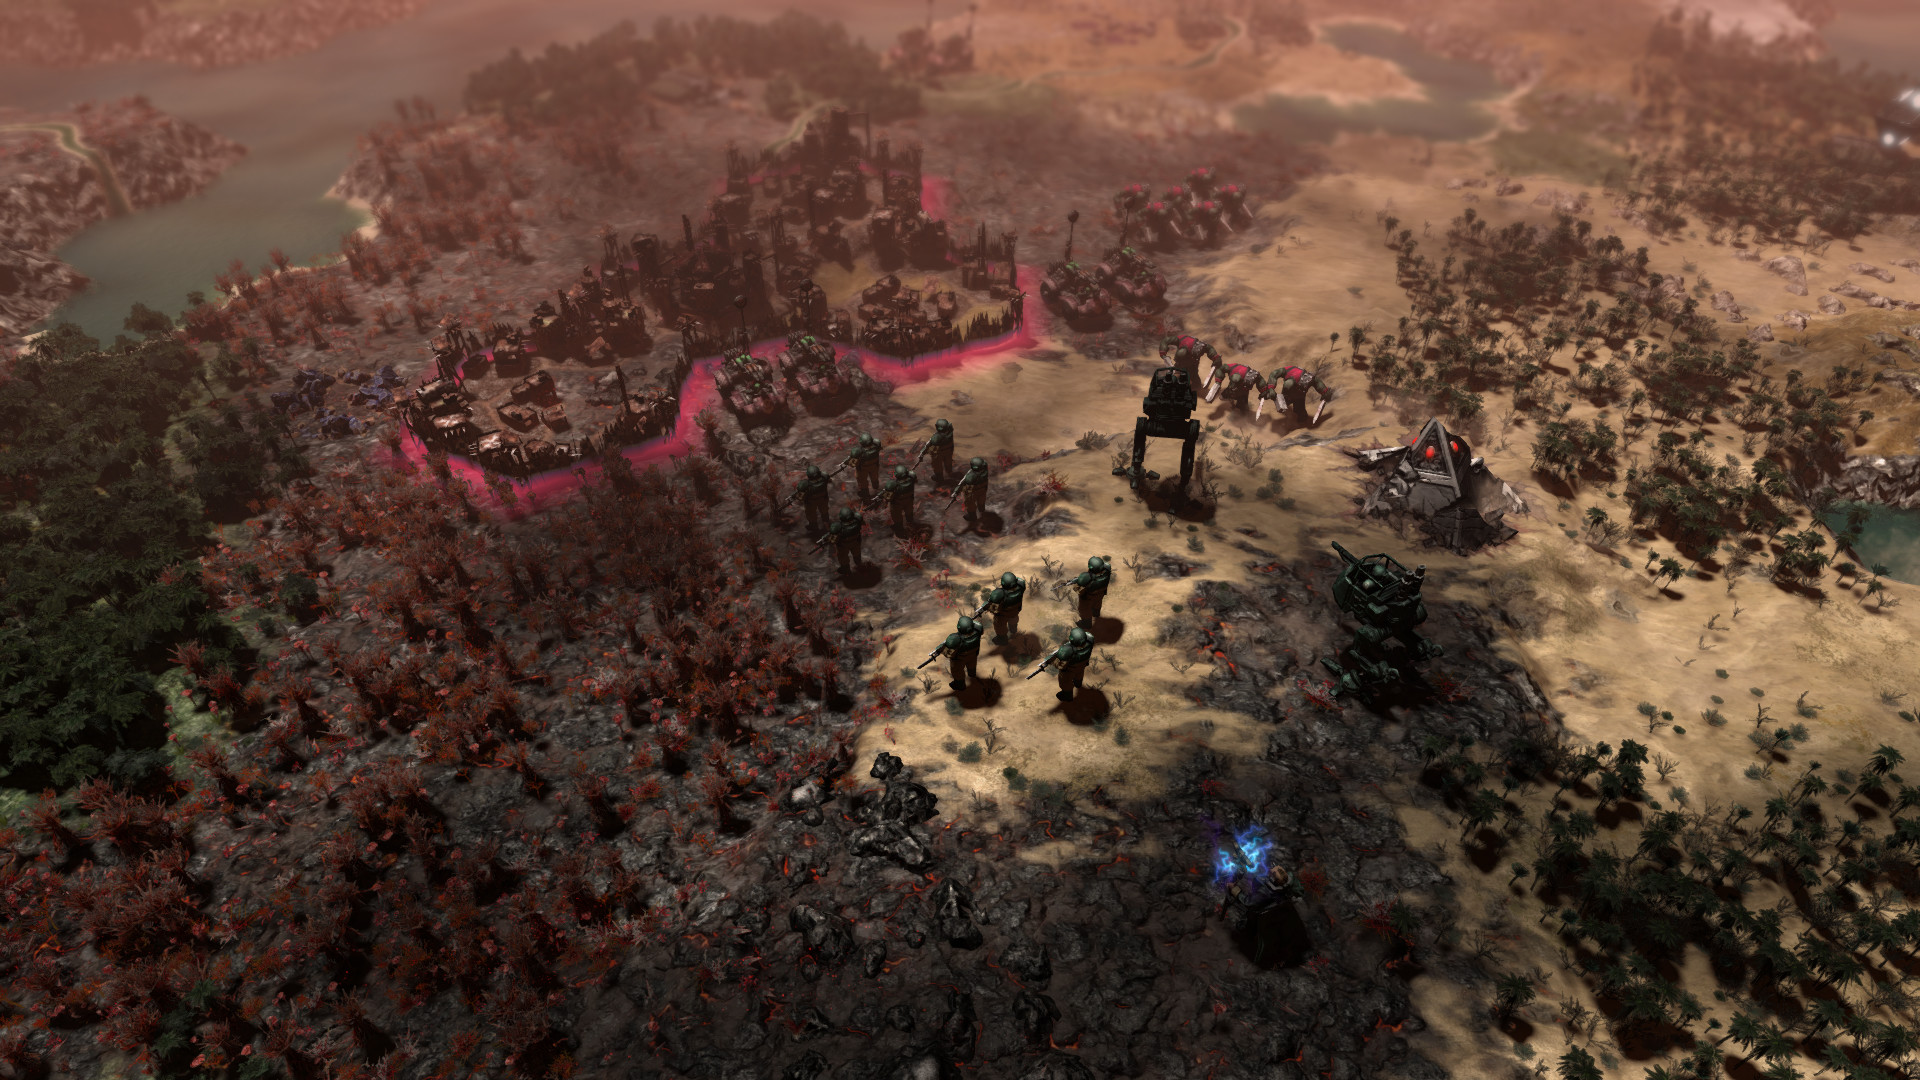 獲極度好評的策略遊戲《Warhammer 40,000: Gladius - Relics of War》限免！取得後終身免費遊玩 - 電腦王阿達